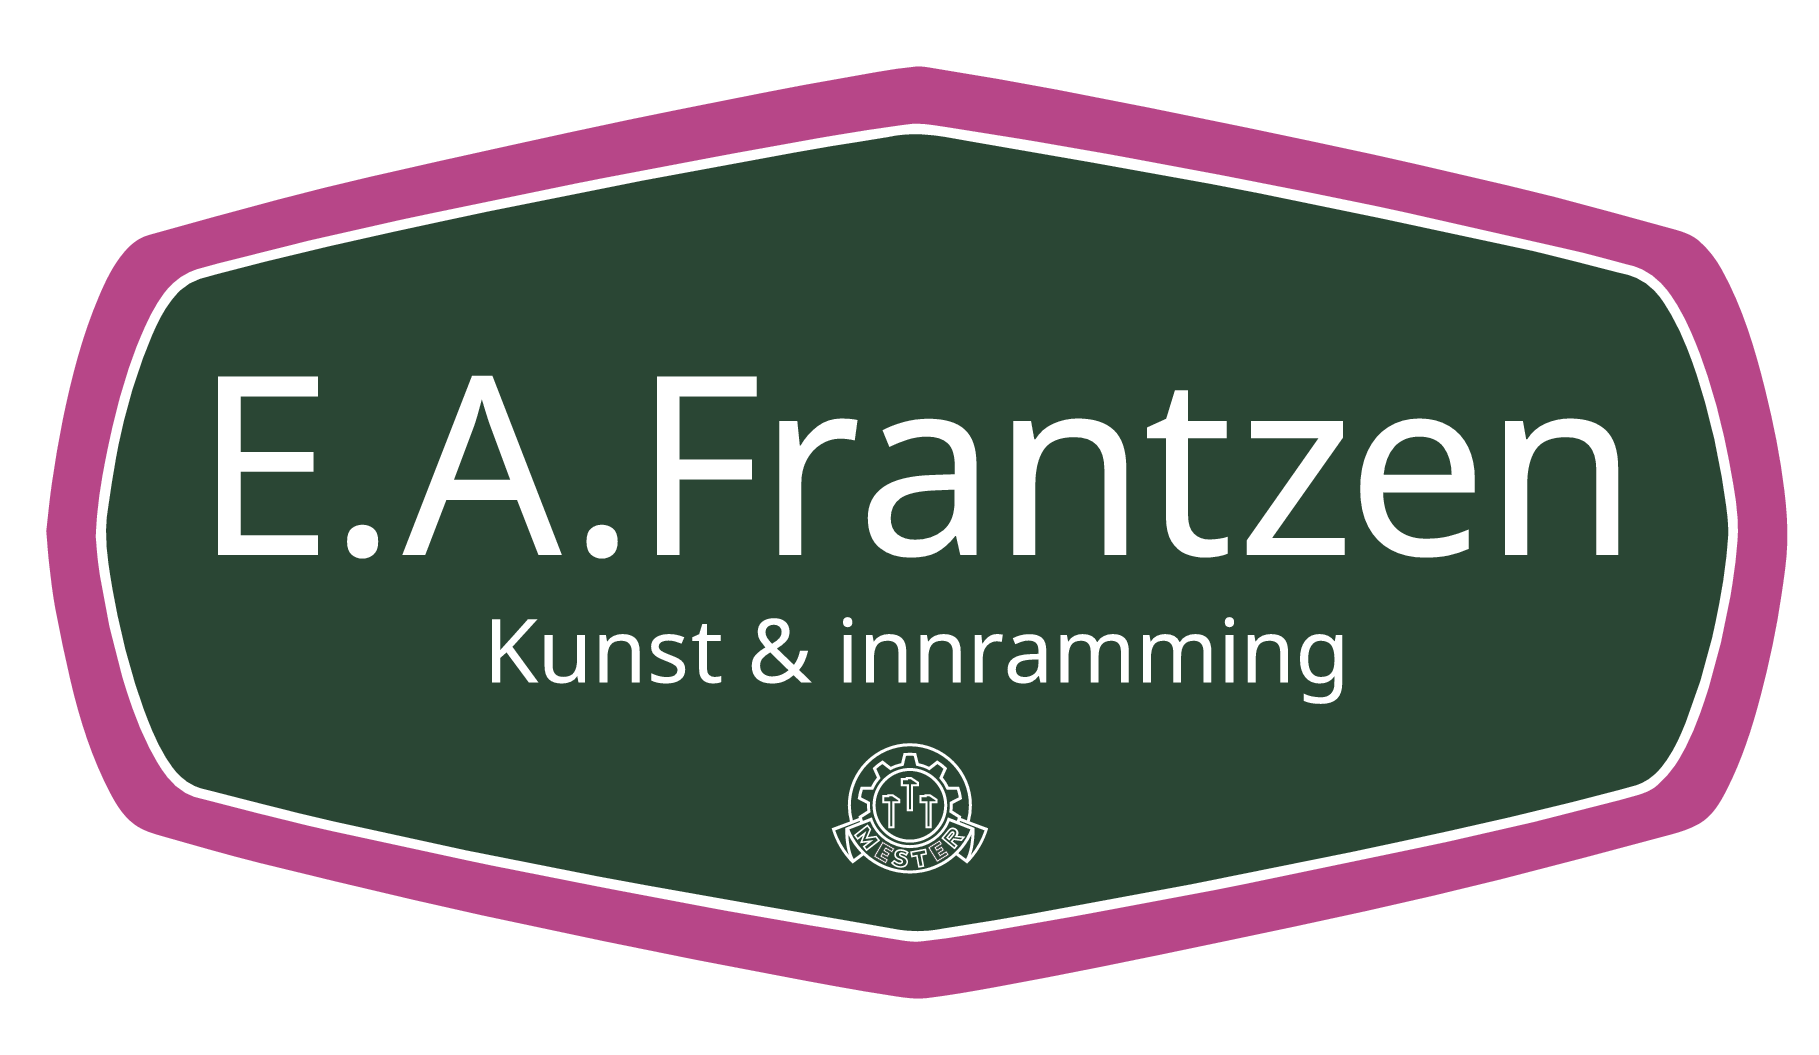 E.A. Frantzen